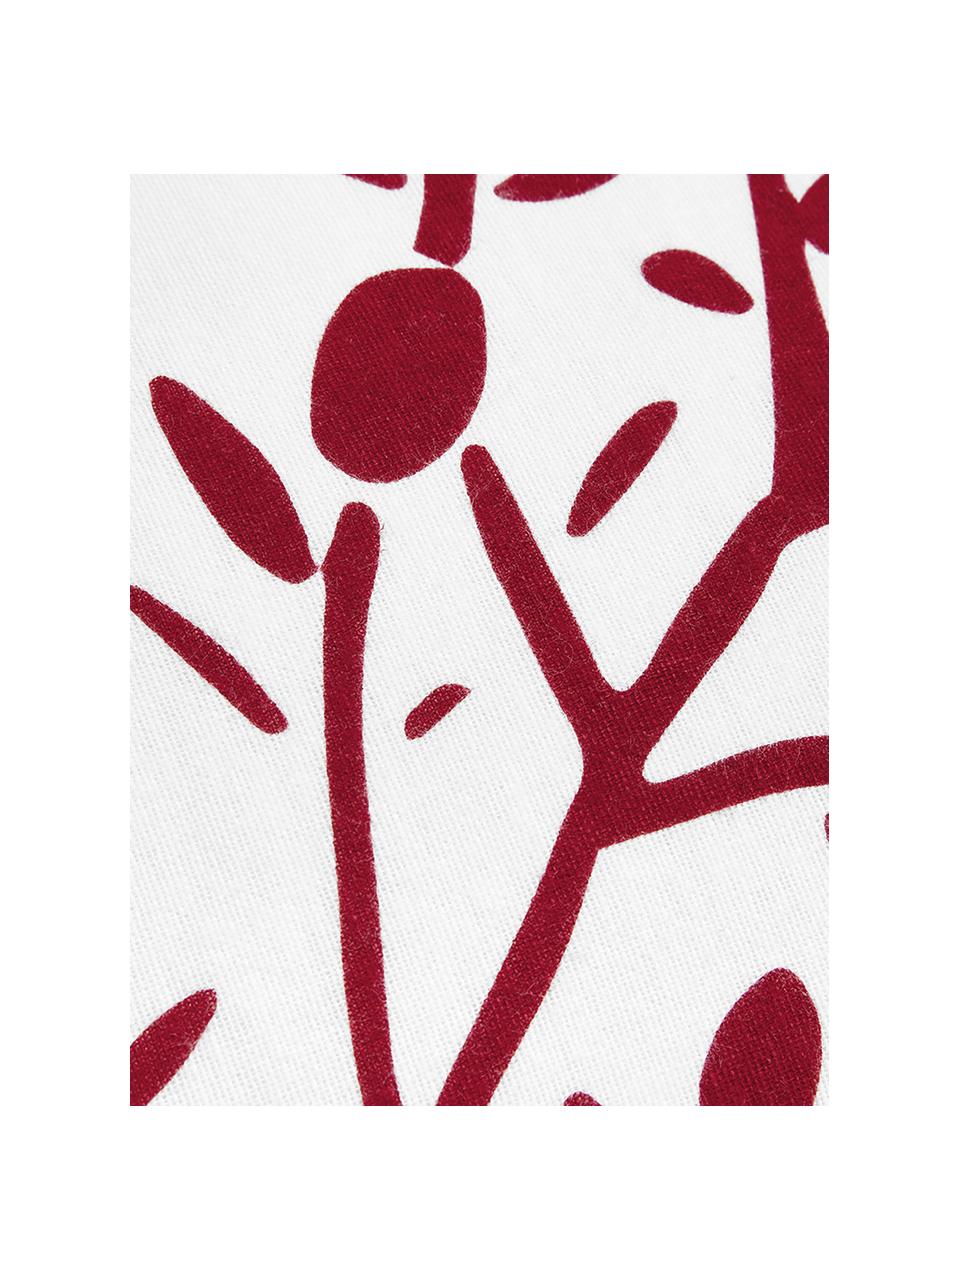 Flanelové povlečení Mistletoe, Bílá, červená, 240 x 220 cm + 2 polštáře 80 x 80 cm